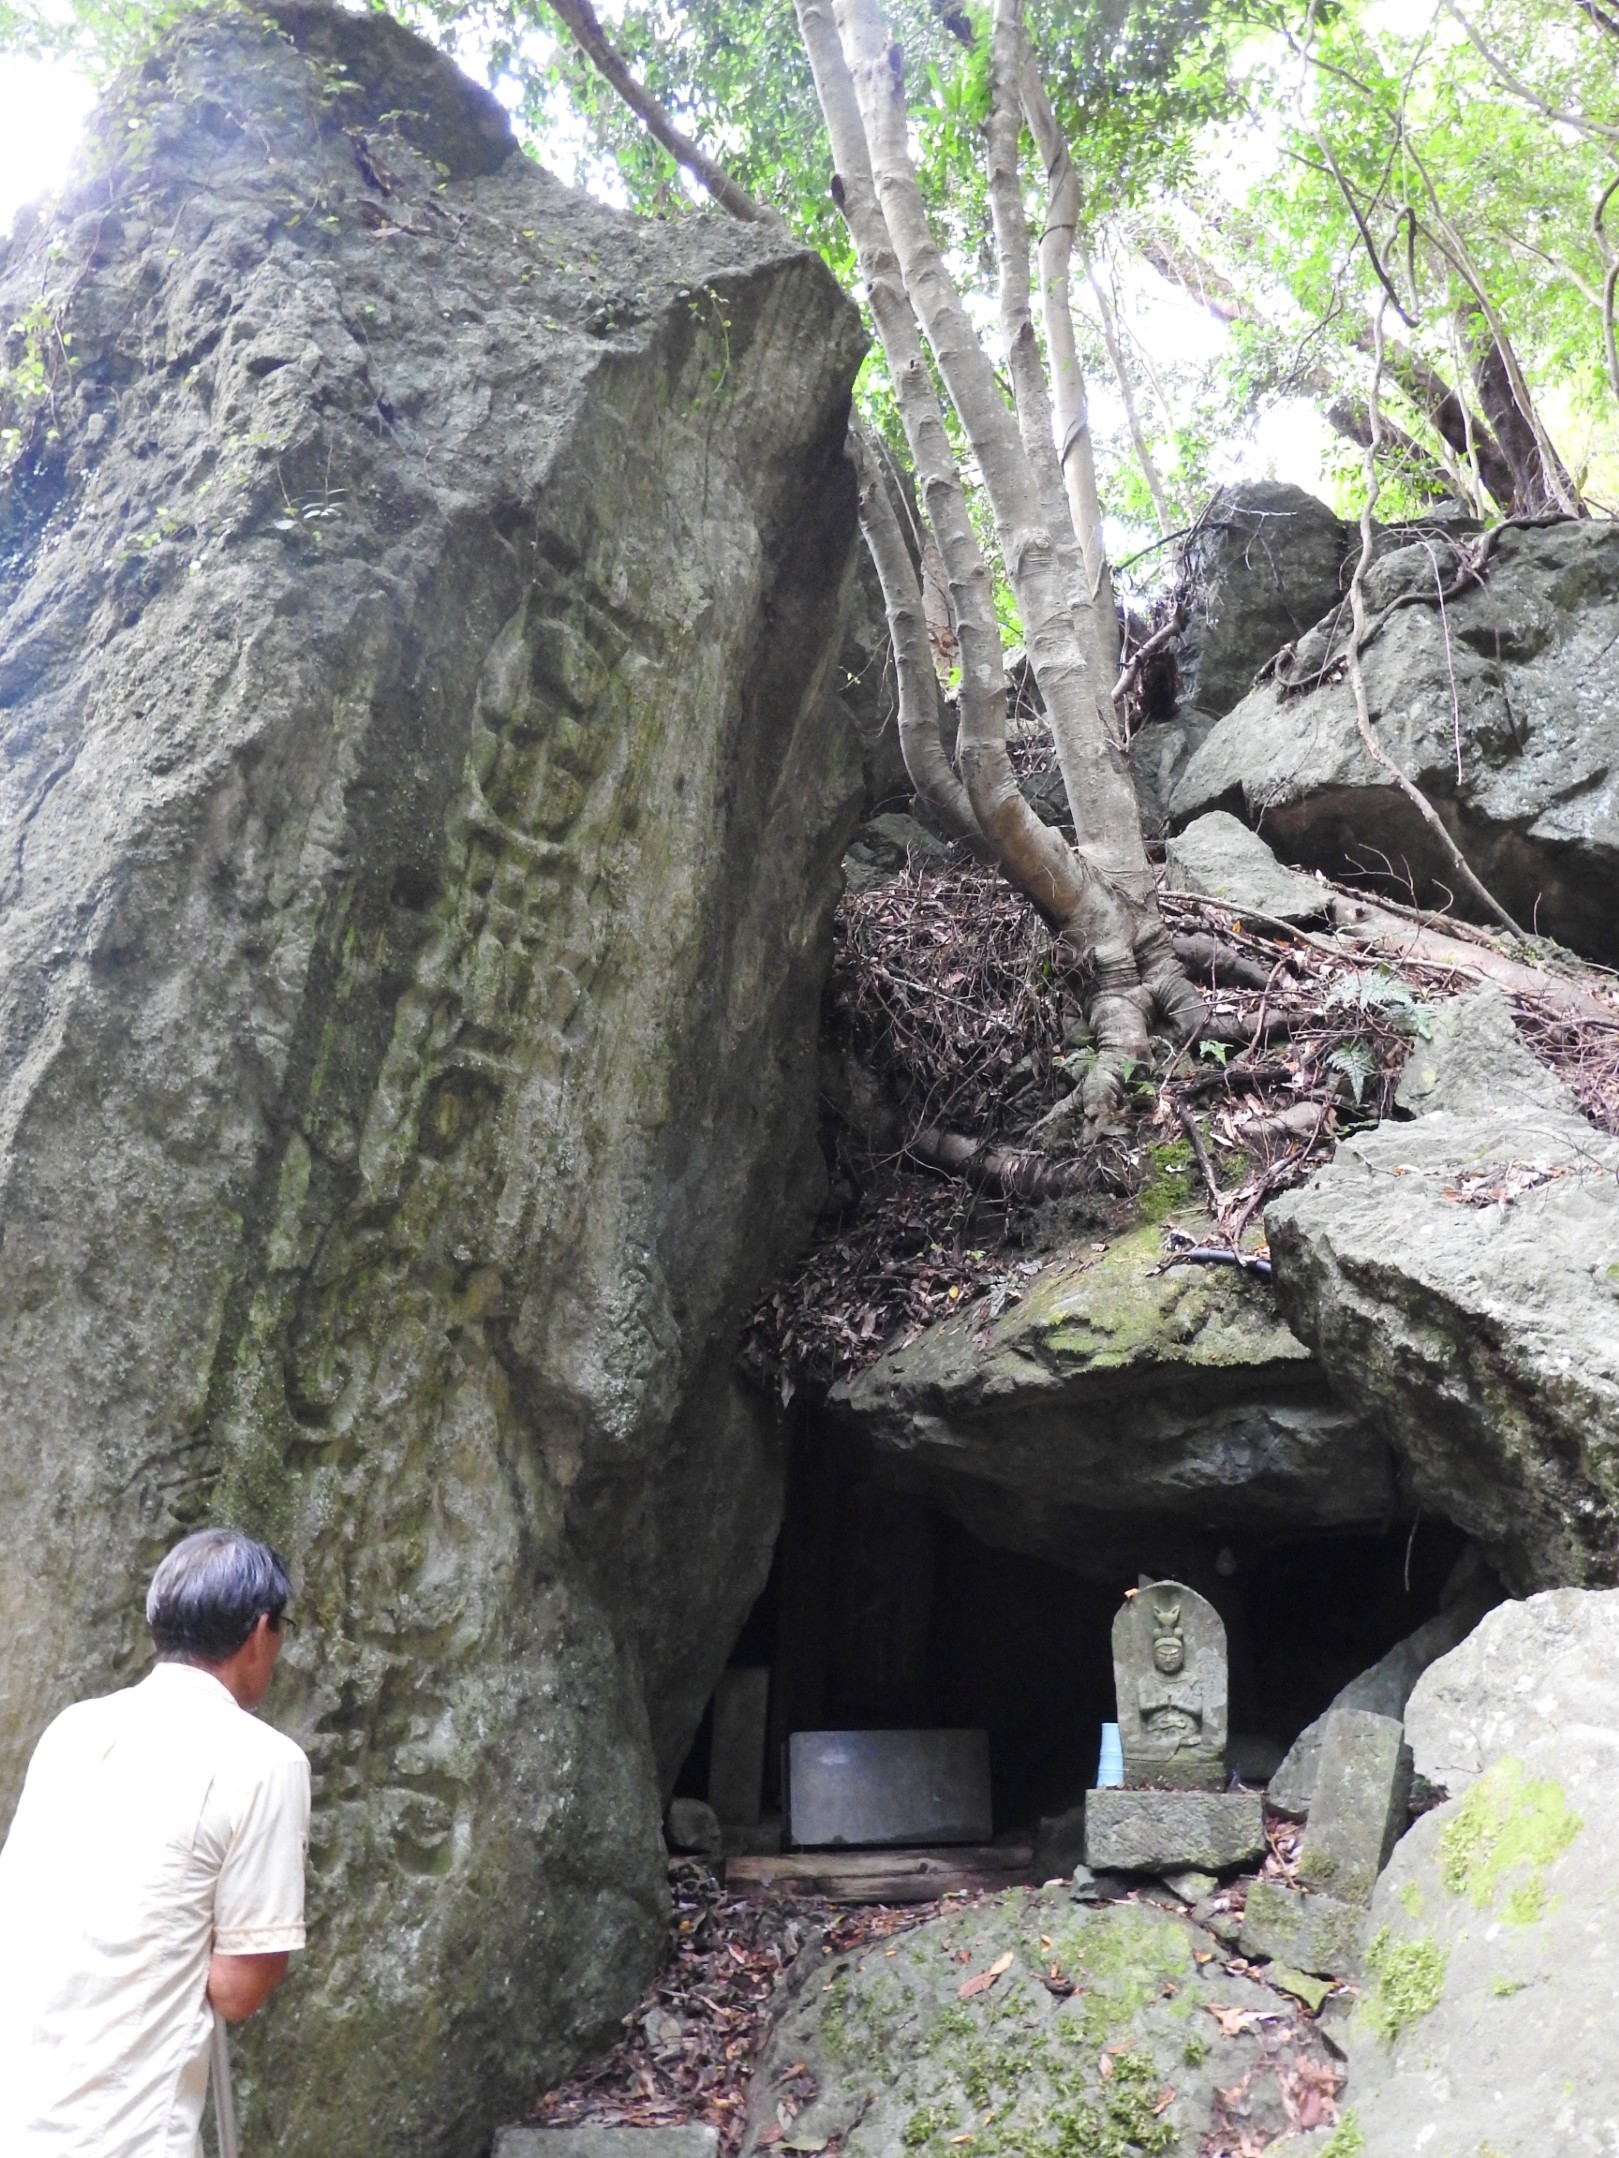 三滝神社に行く途中にある岩観音。江戸時代、行者が岩穴で生活し、滝に打たれ改心の行をした。穴の中や周囲には石仏が多くある